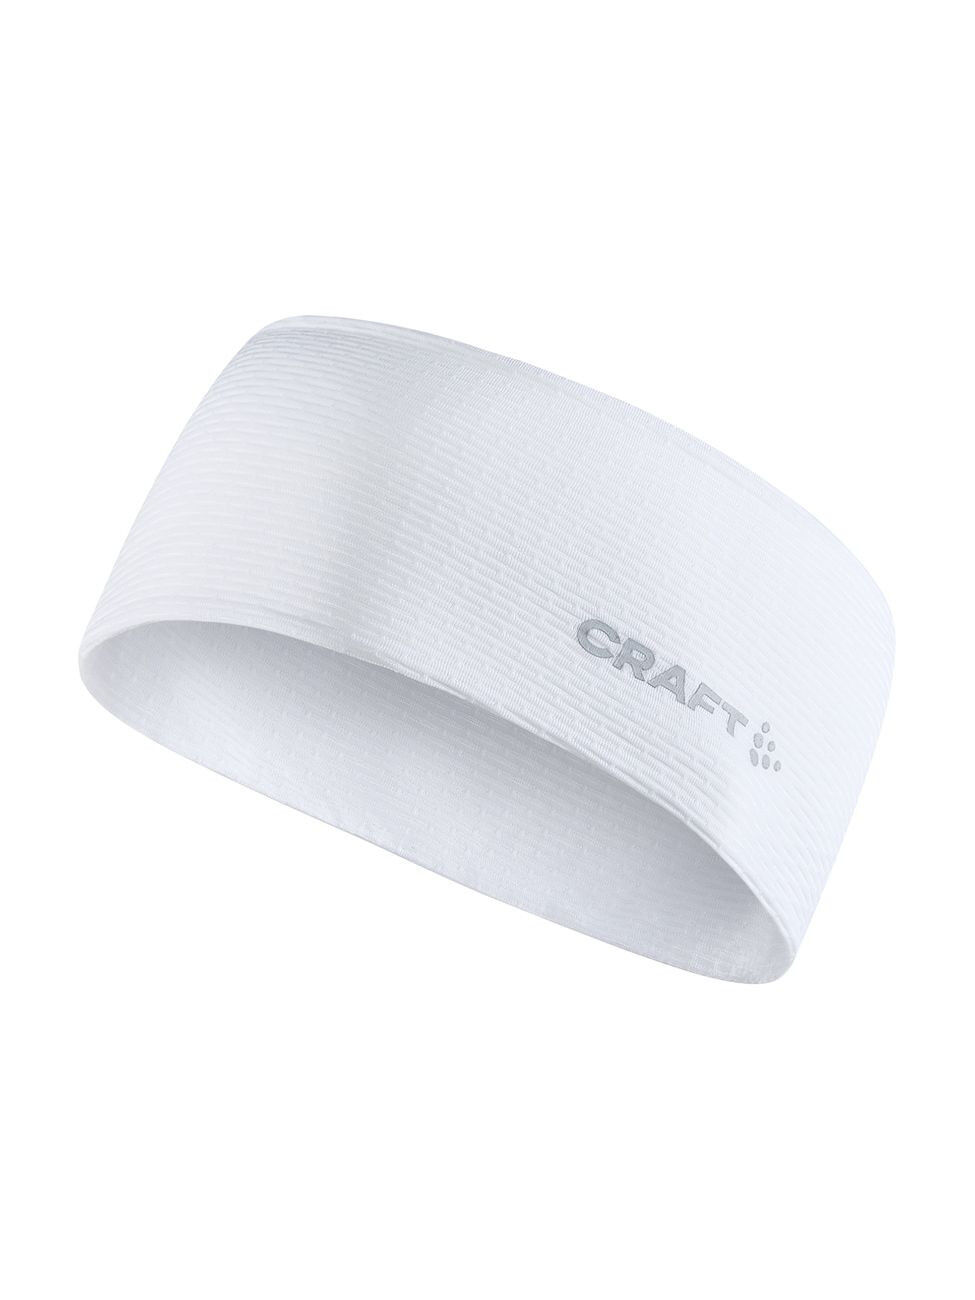 Craft Mesh Nano Weight Headband - Headband